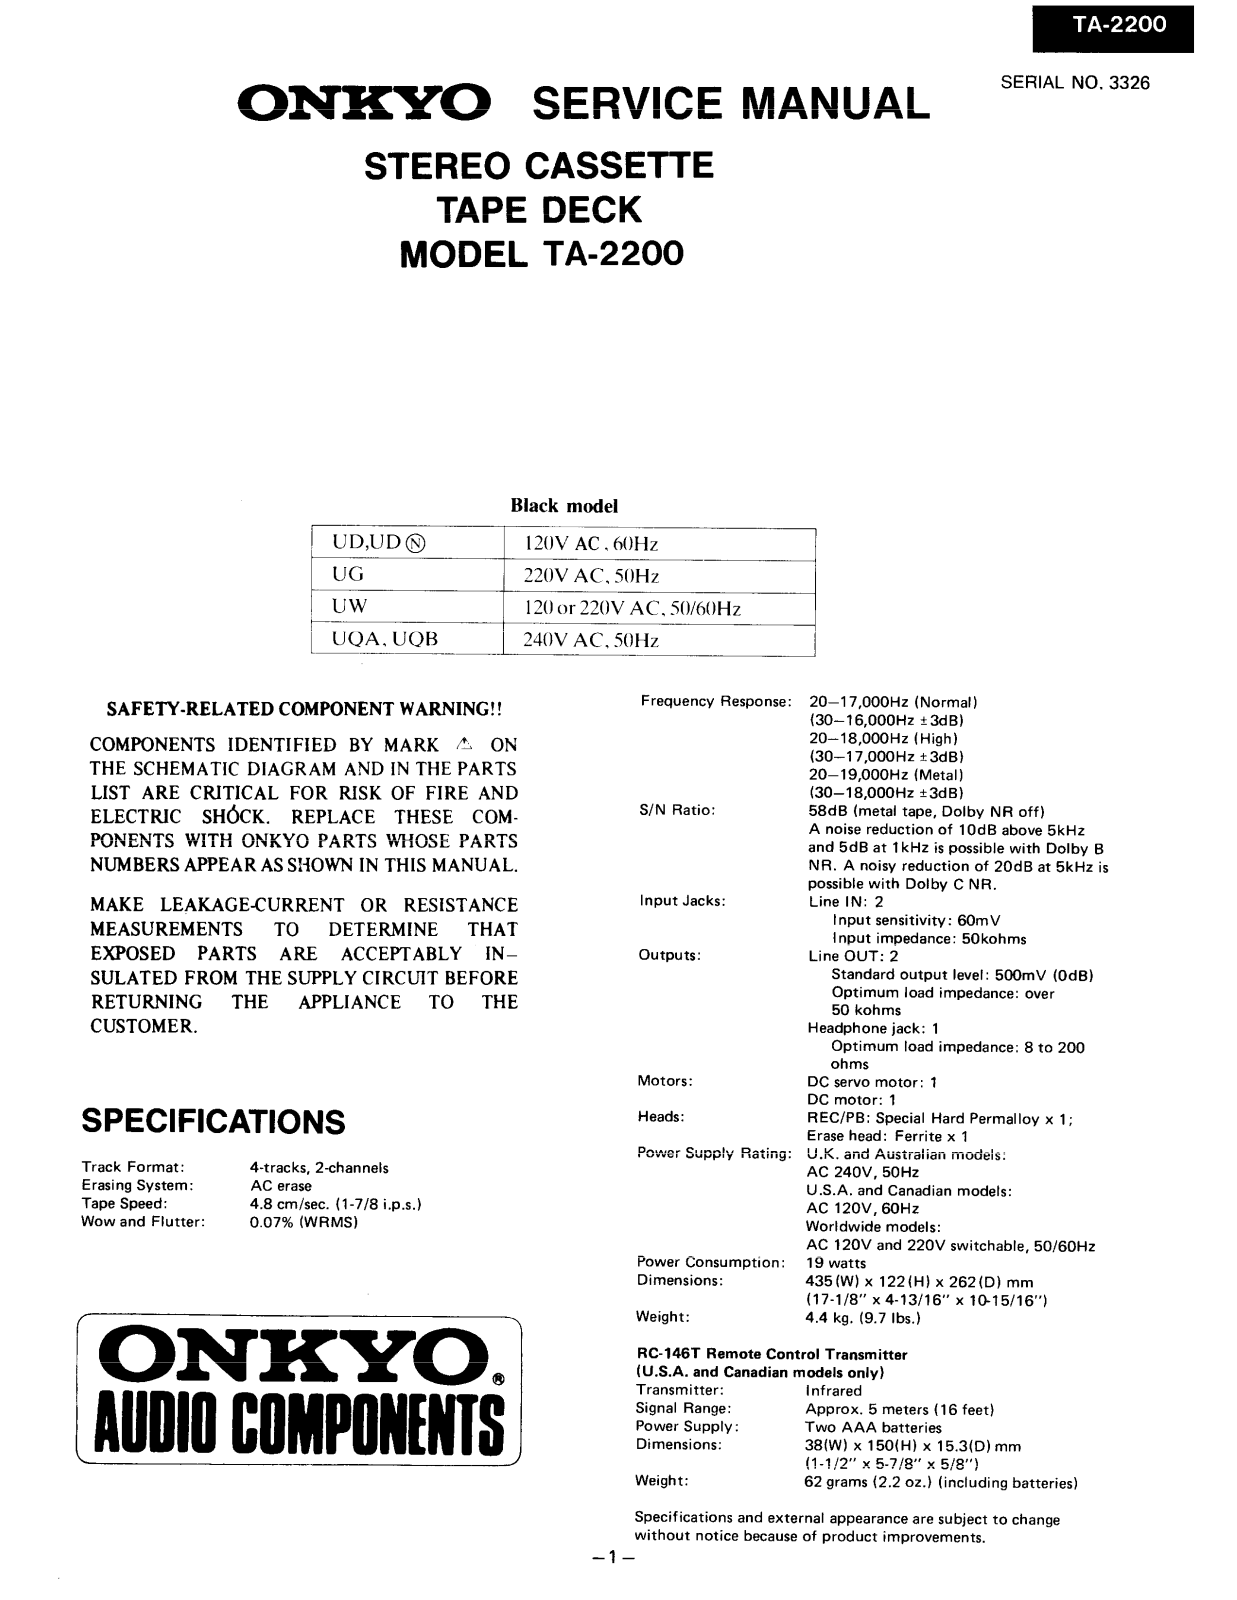 Onkyo TA-2200 Service manual